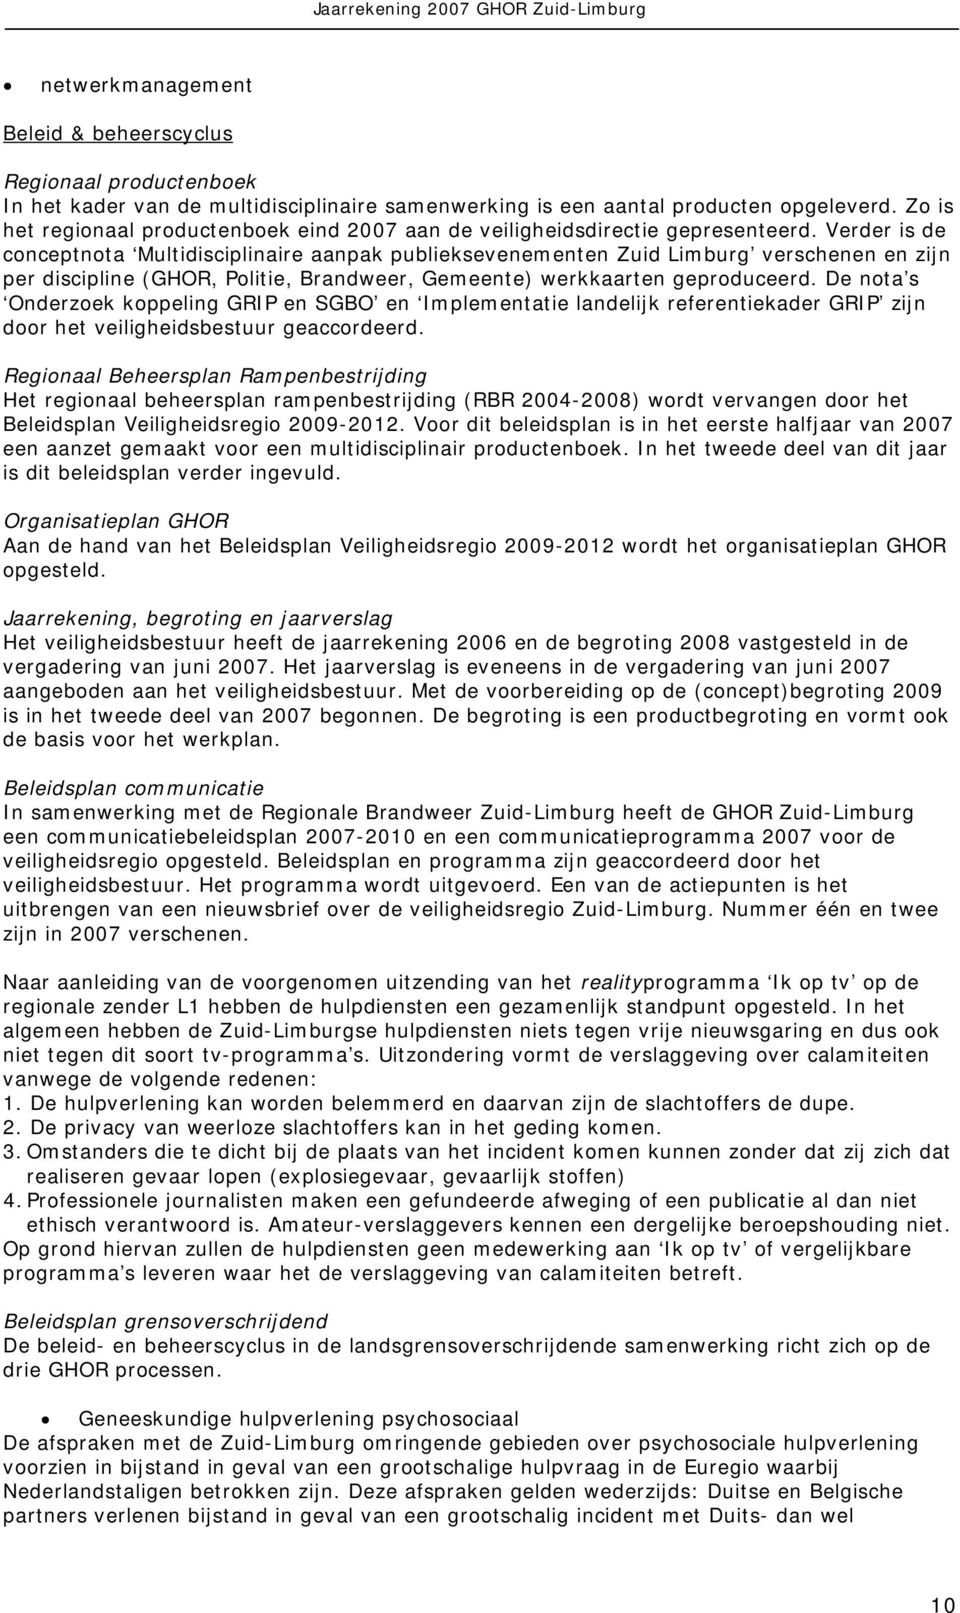 Verder is de conceptnota Multidisciplinaire aanpak publieksevenementen Zuid Limburg verschenen en zijn per discipline (GHOR, Politie, Brandweer, Gemeente) werkkaarten geproduceerd.